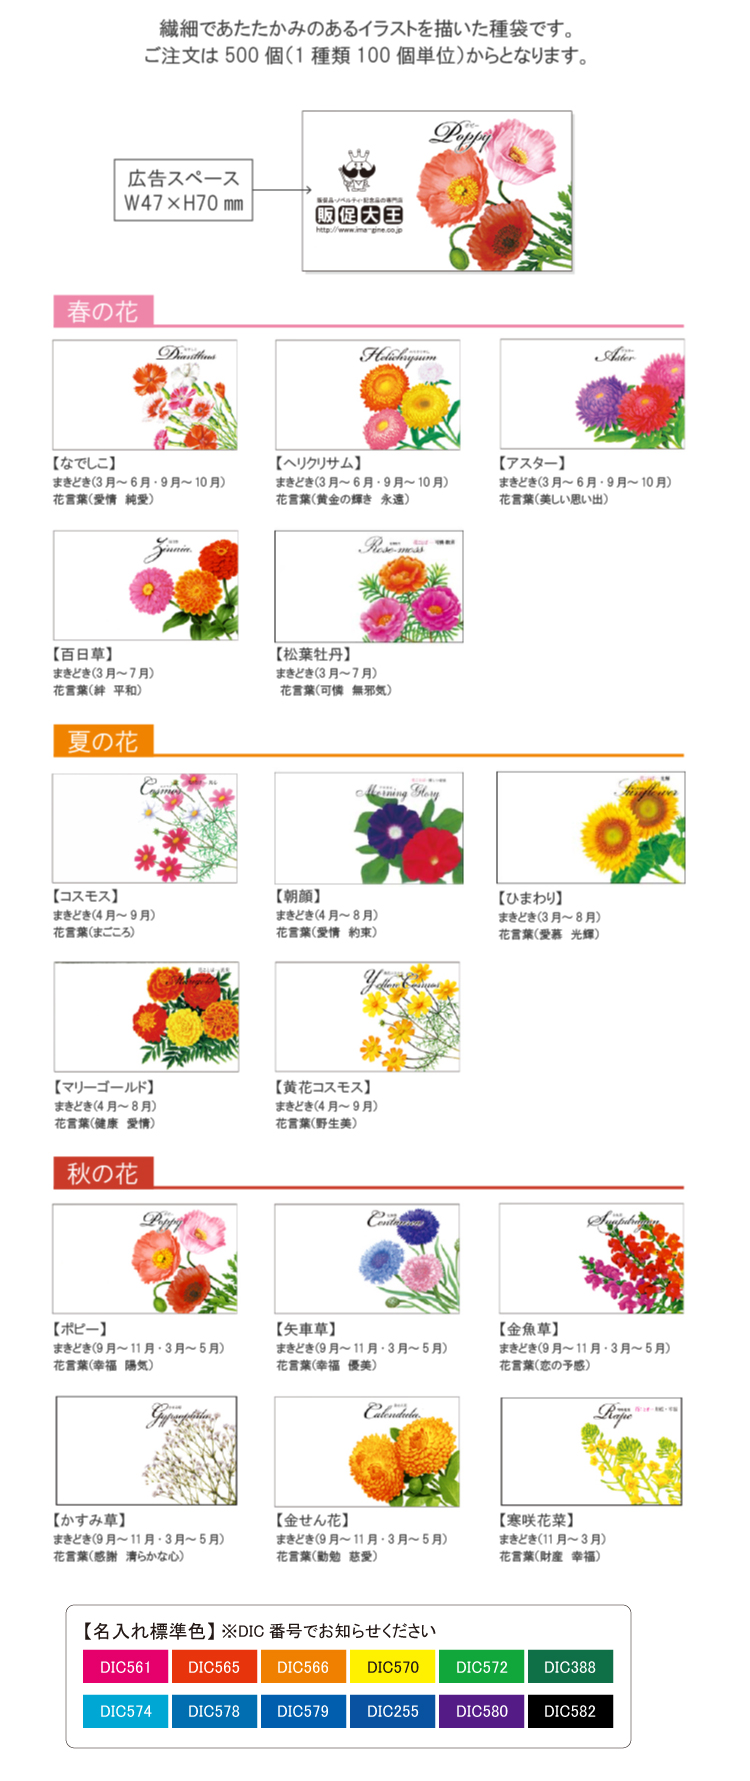 横型イラスト花の種子 最安22円 販促大王 ノベルティ 販促品